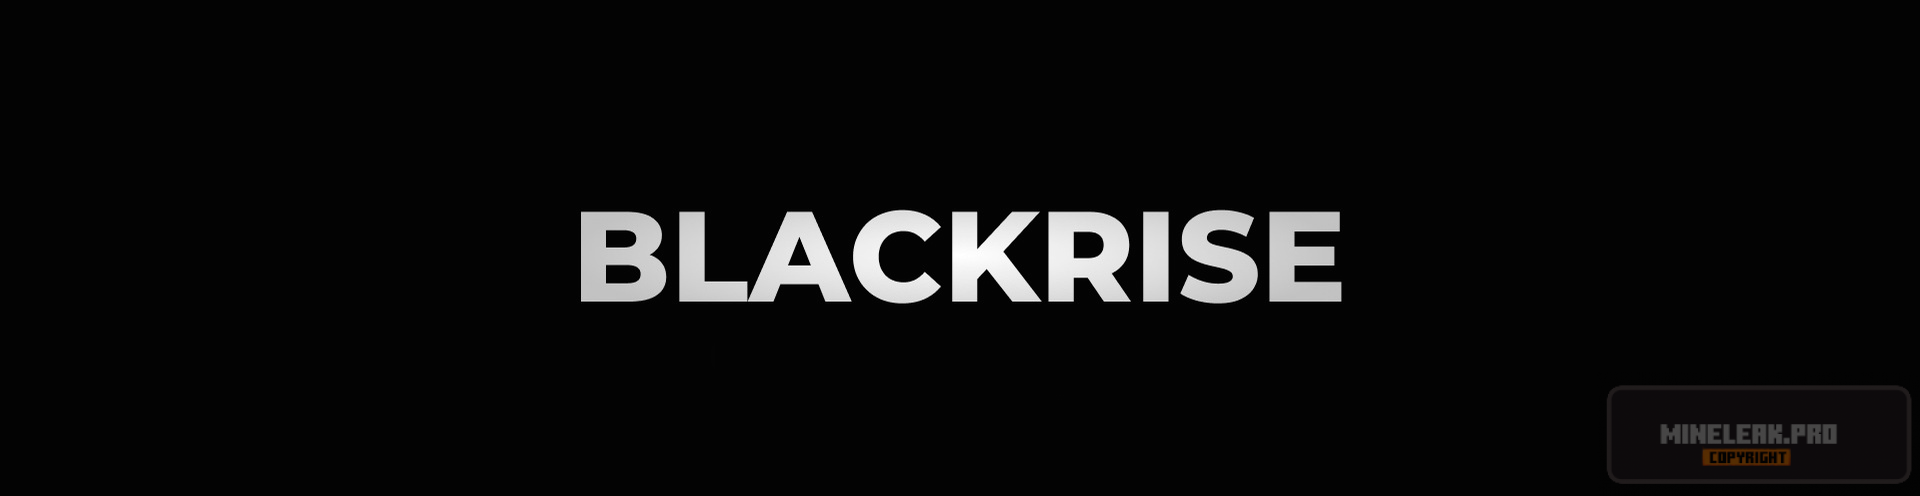 blackrise-logo.png